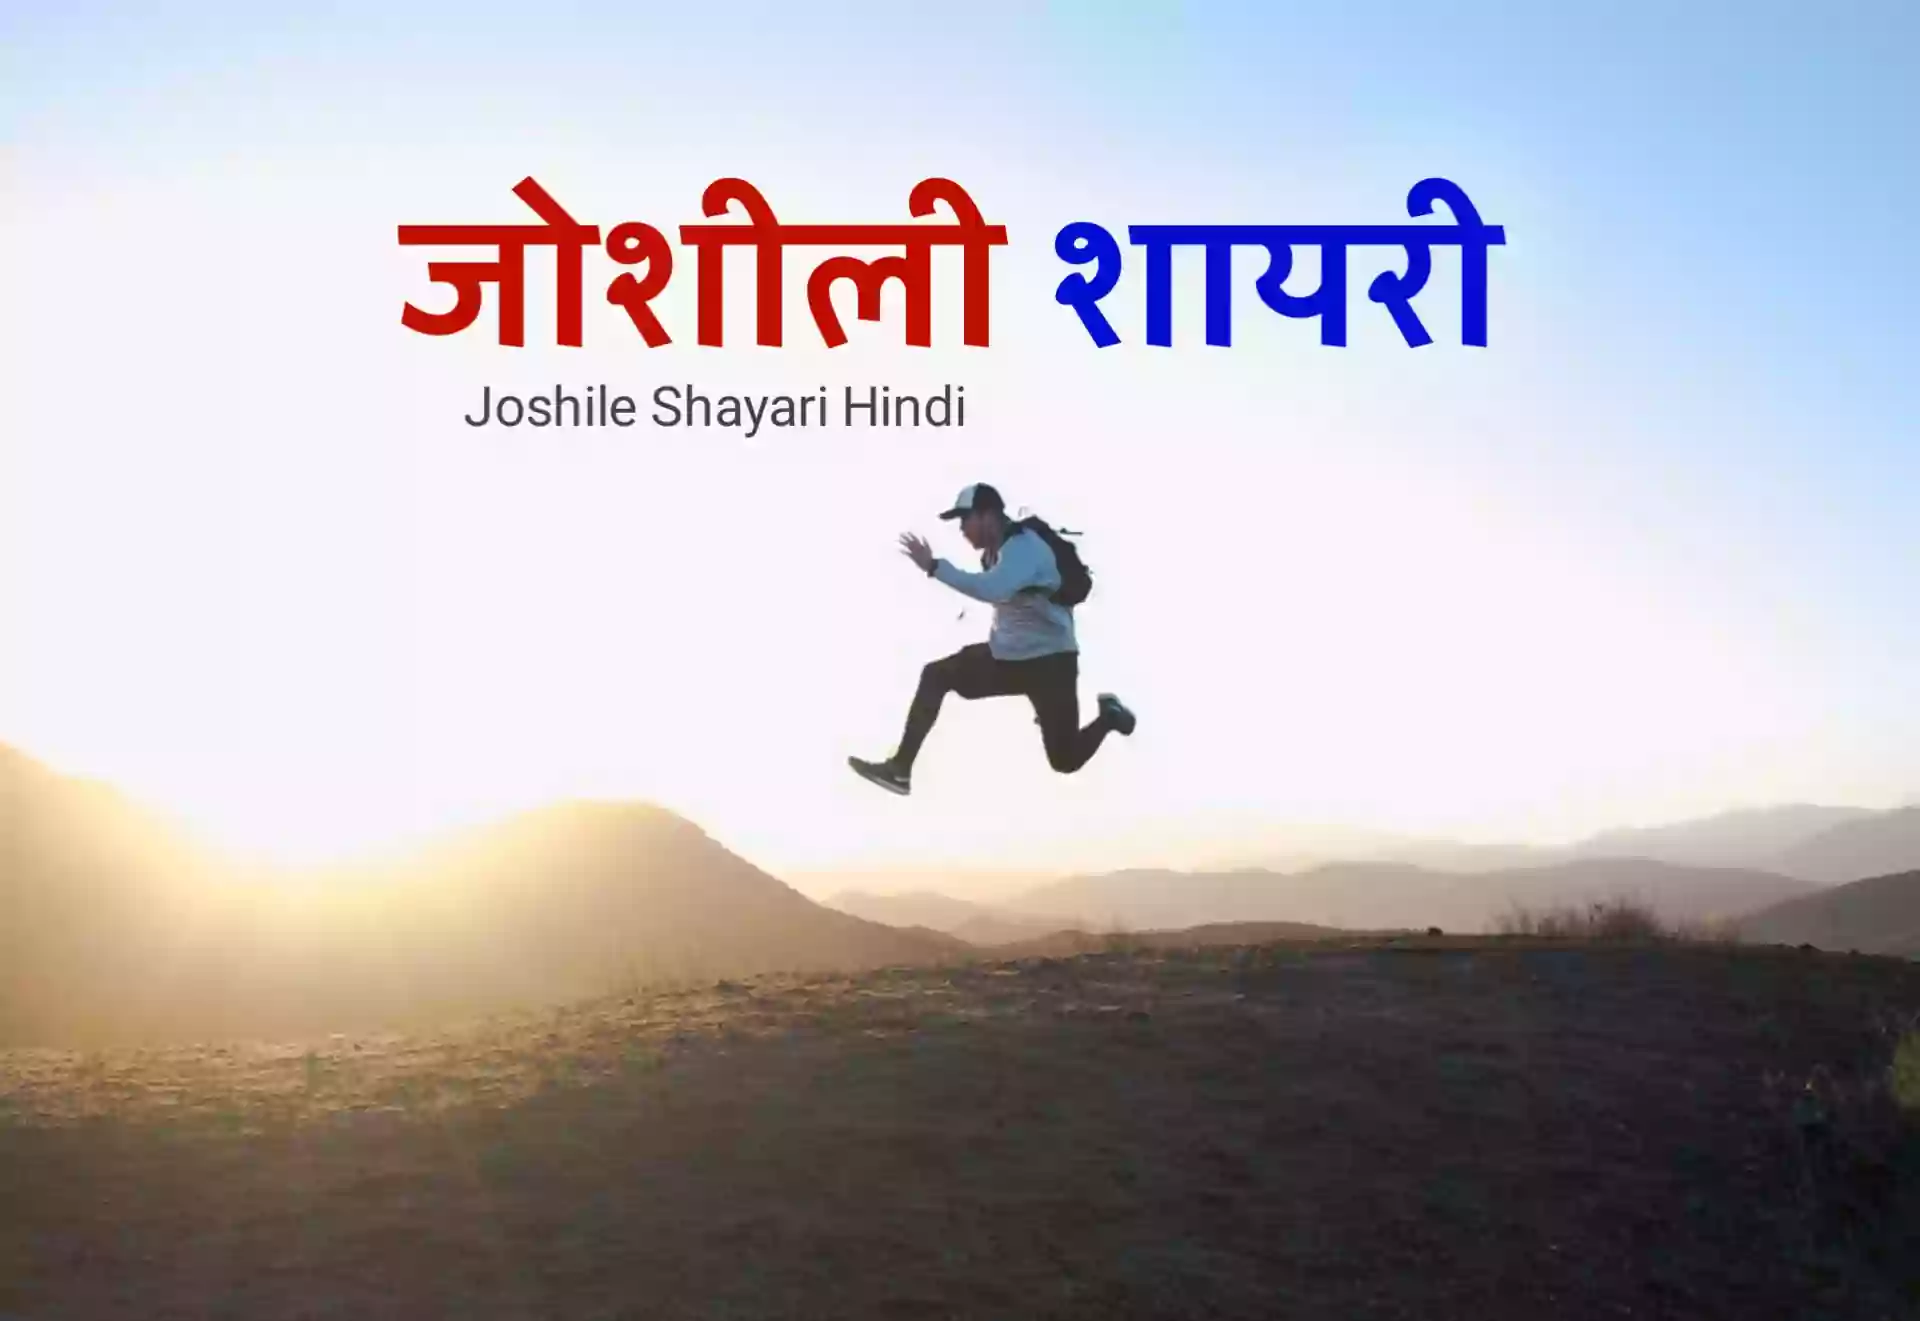 Joshili Shayari